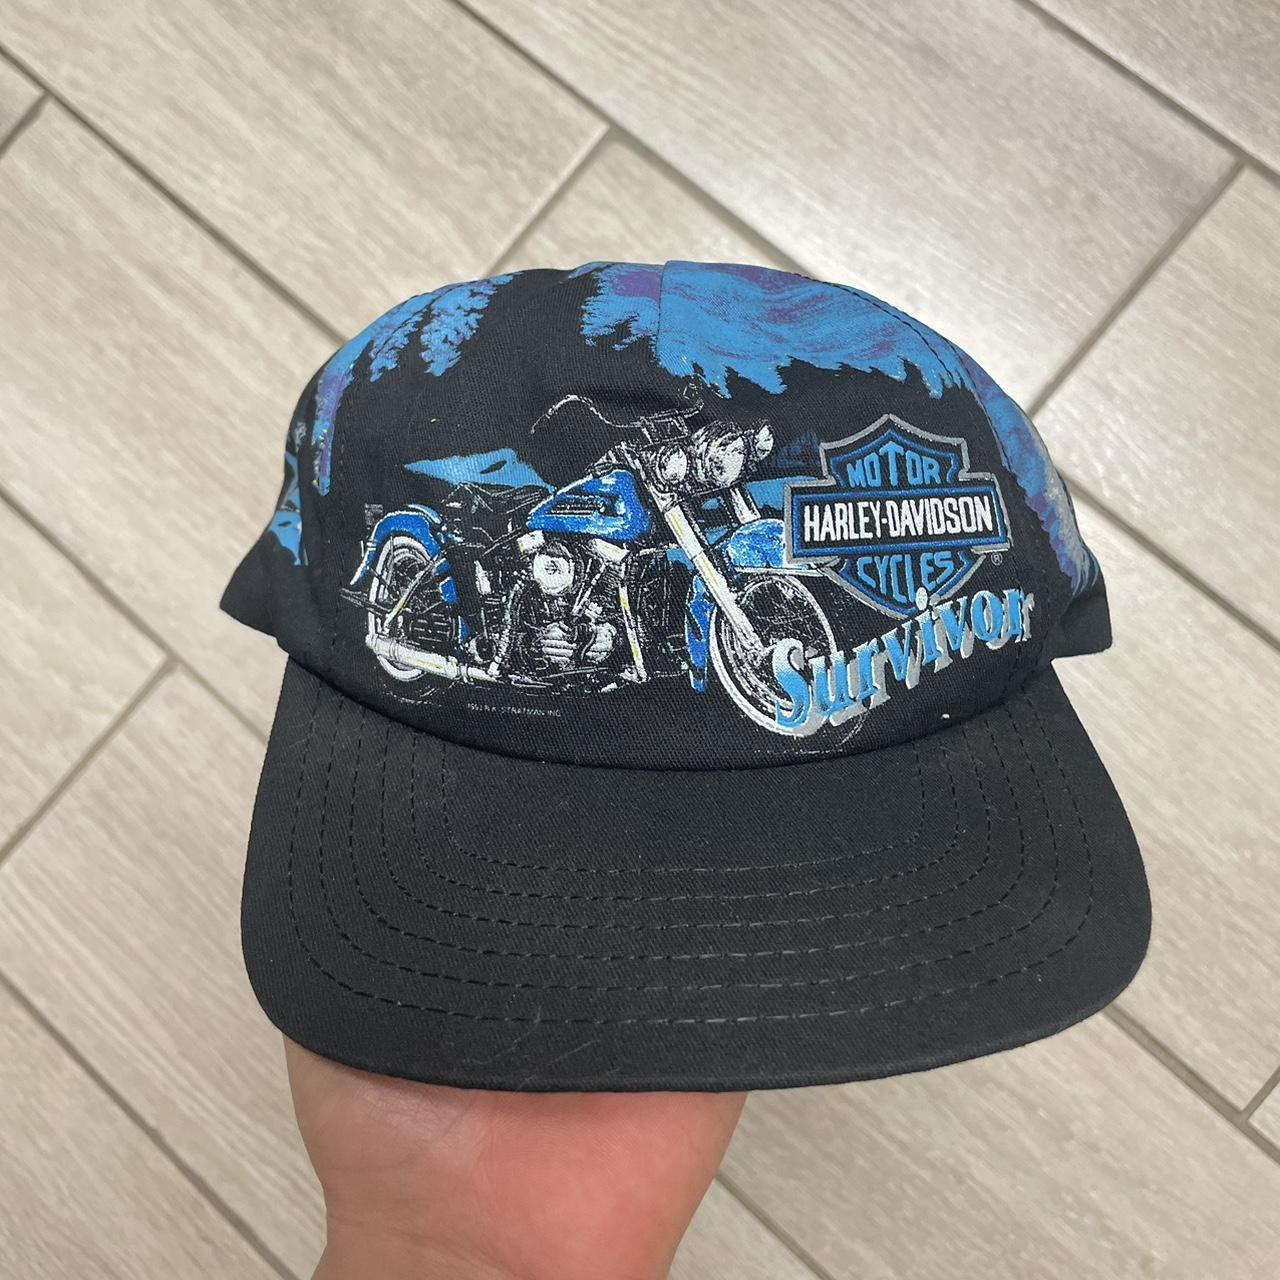 Harley Davidson Men's Black and Blue Hat